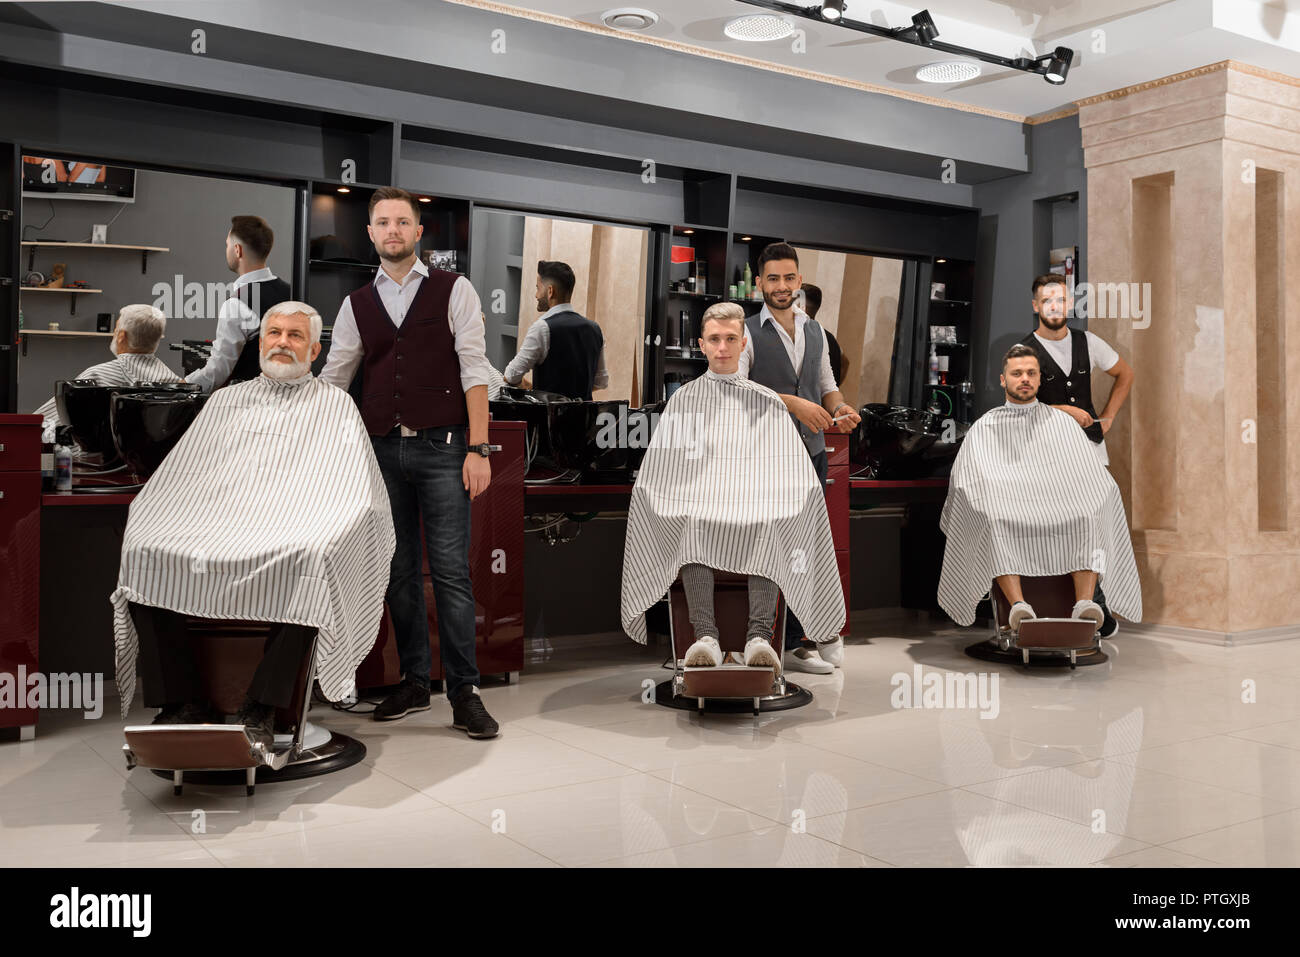 Drei professionelle Friseure stehen in der Nähe von Kunden in Barbershop.  Männliche Klienten sitzen in Friseur Haarschnitt Stühle mit gestreiften  Gewändern bedeckt. Männer posieren und Kamera Stockfotografie - Alamy